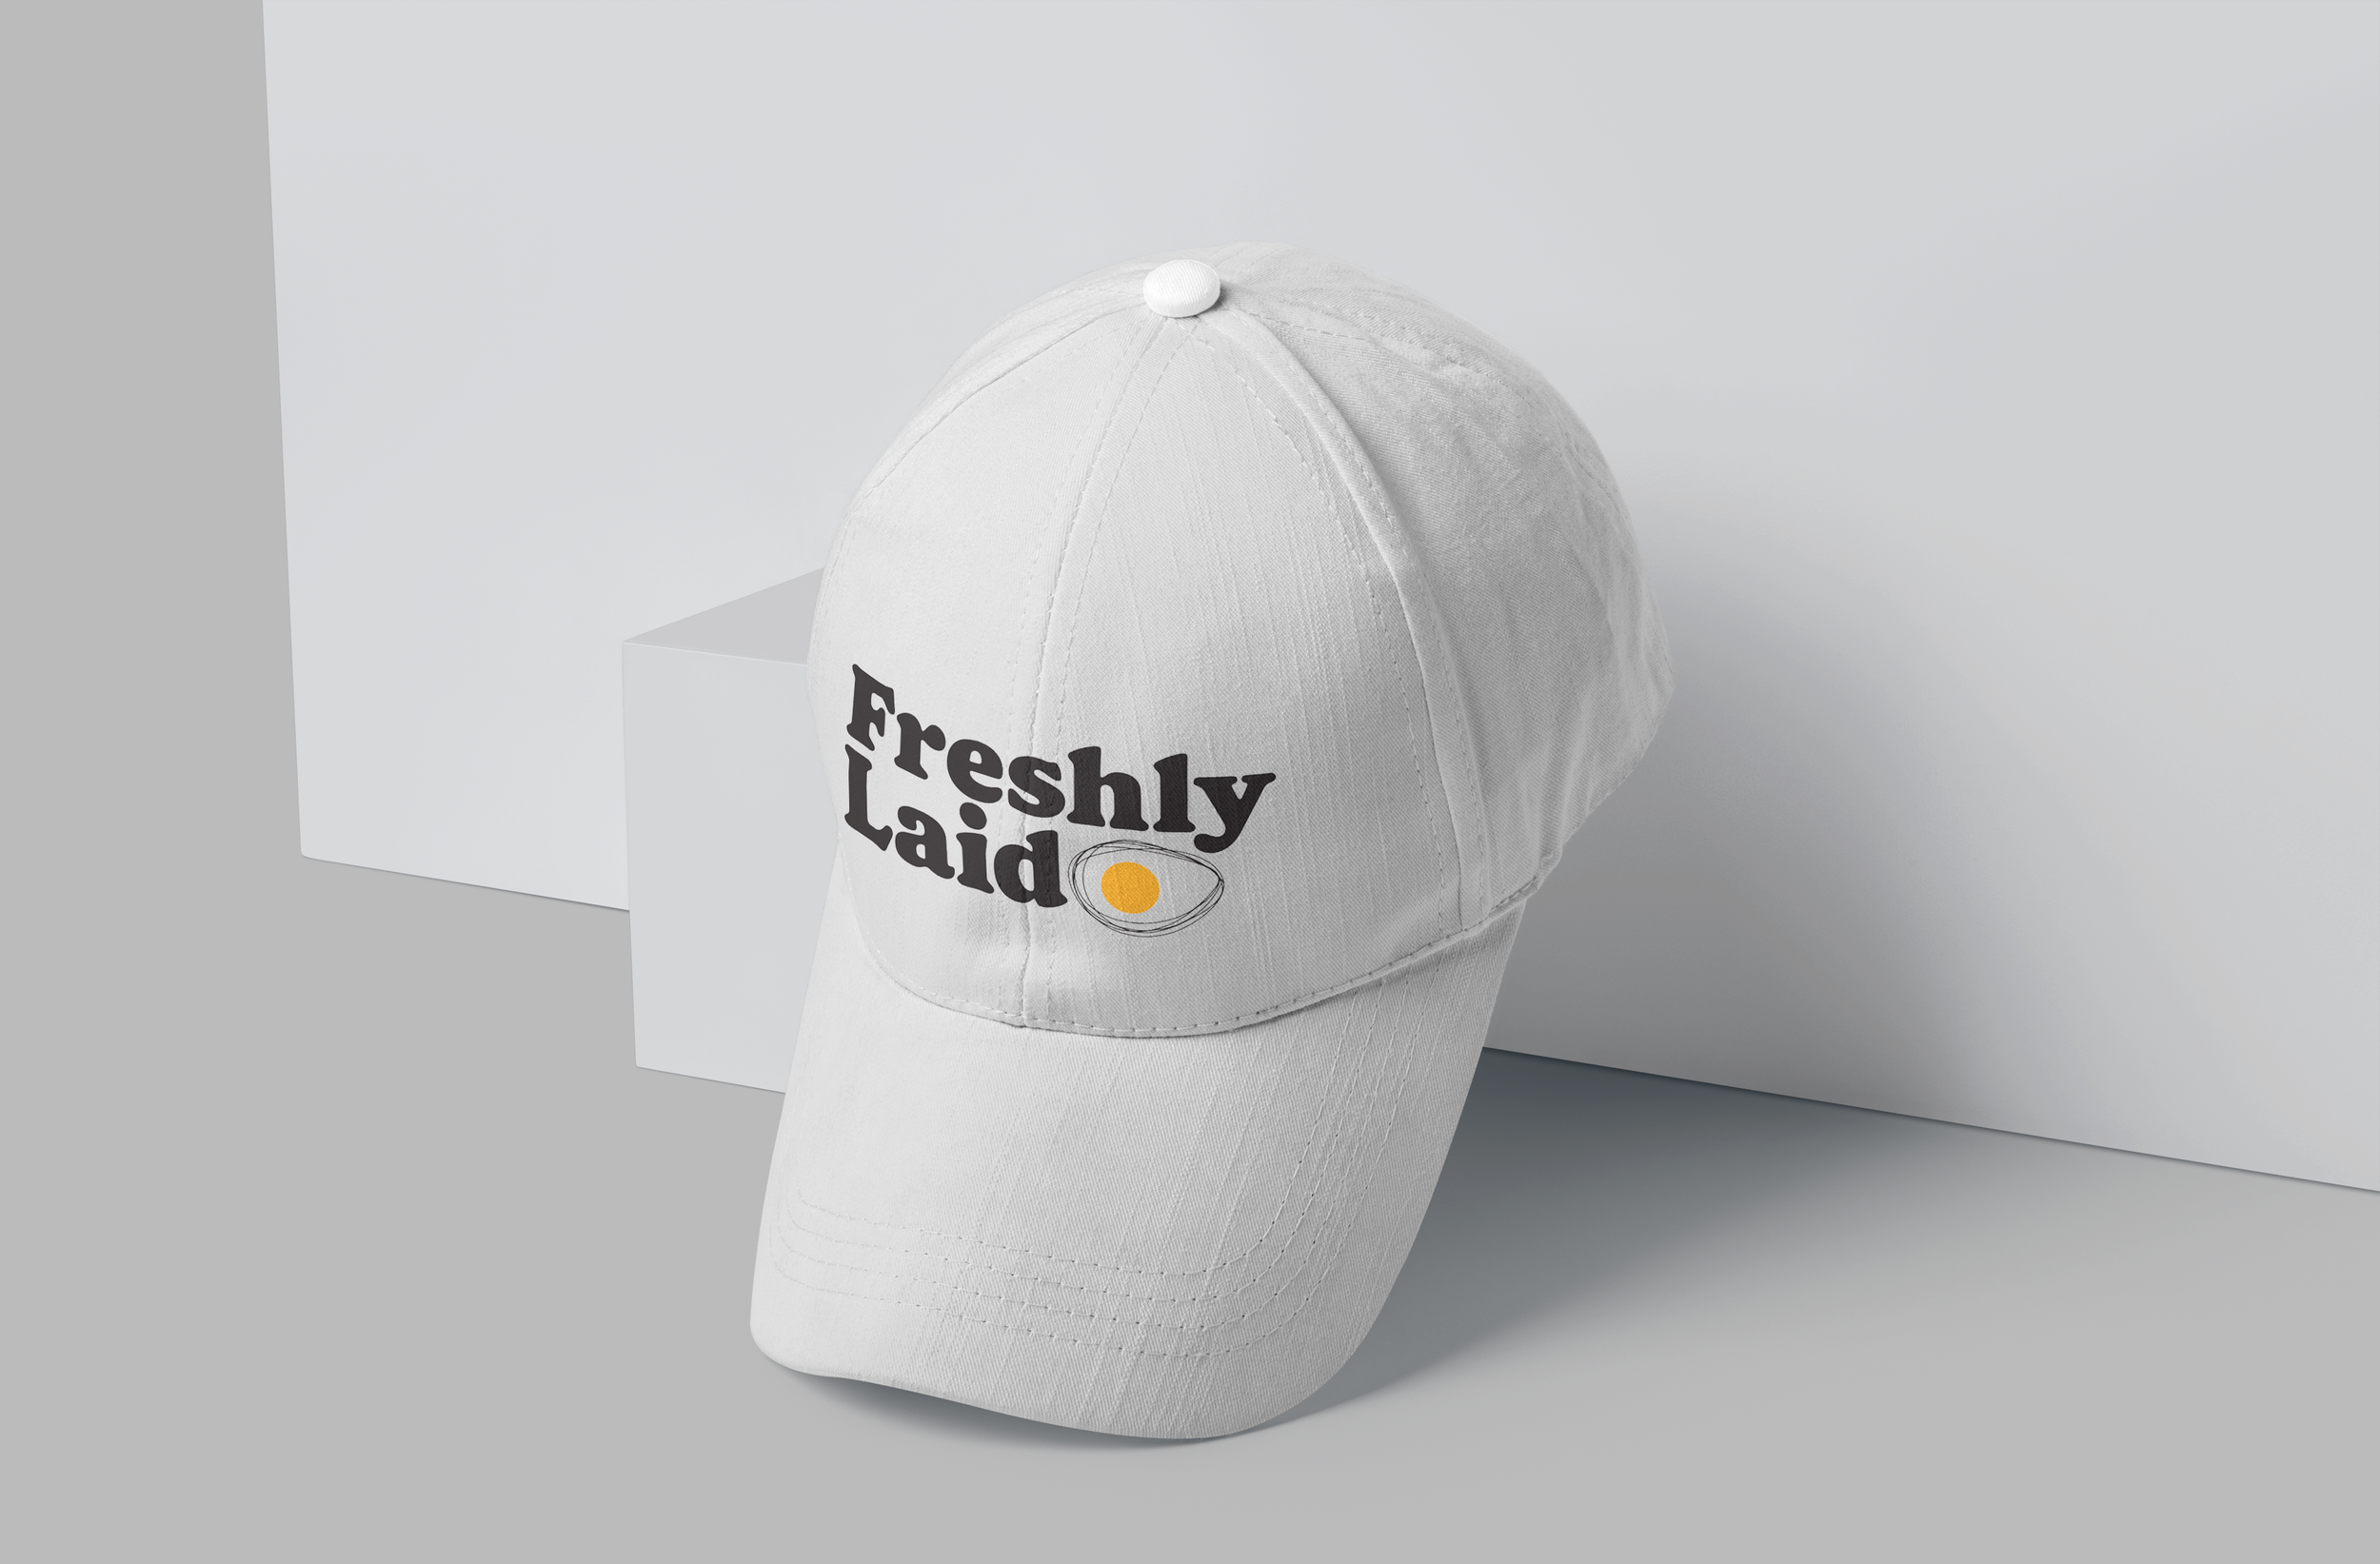 FRESHLY DAD HAT — Freshly Laid